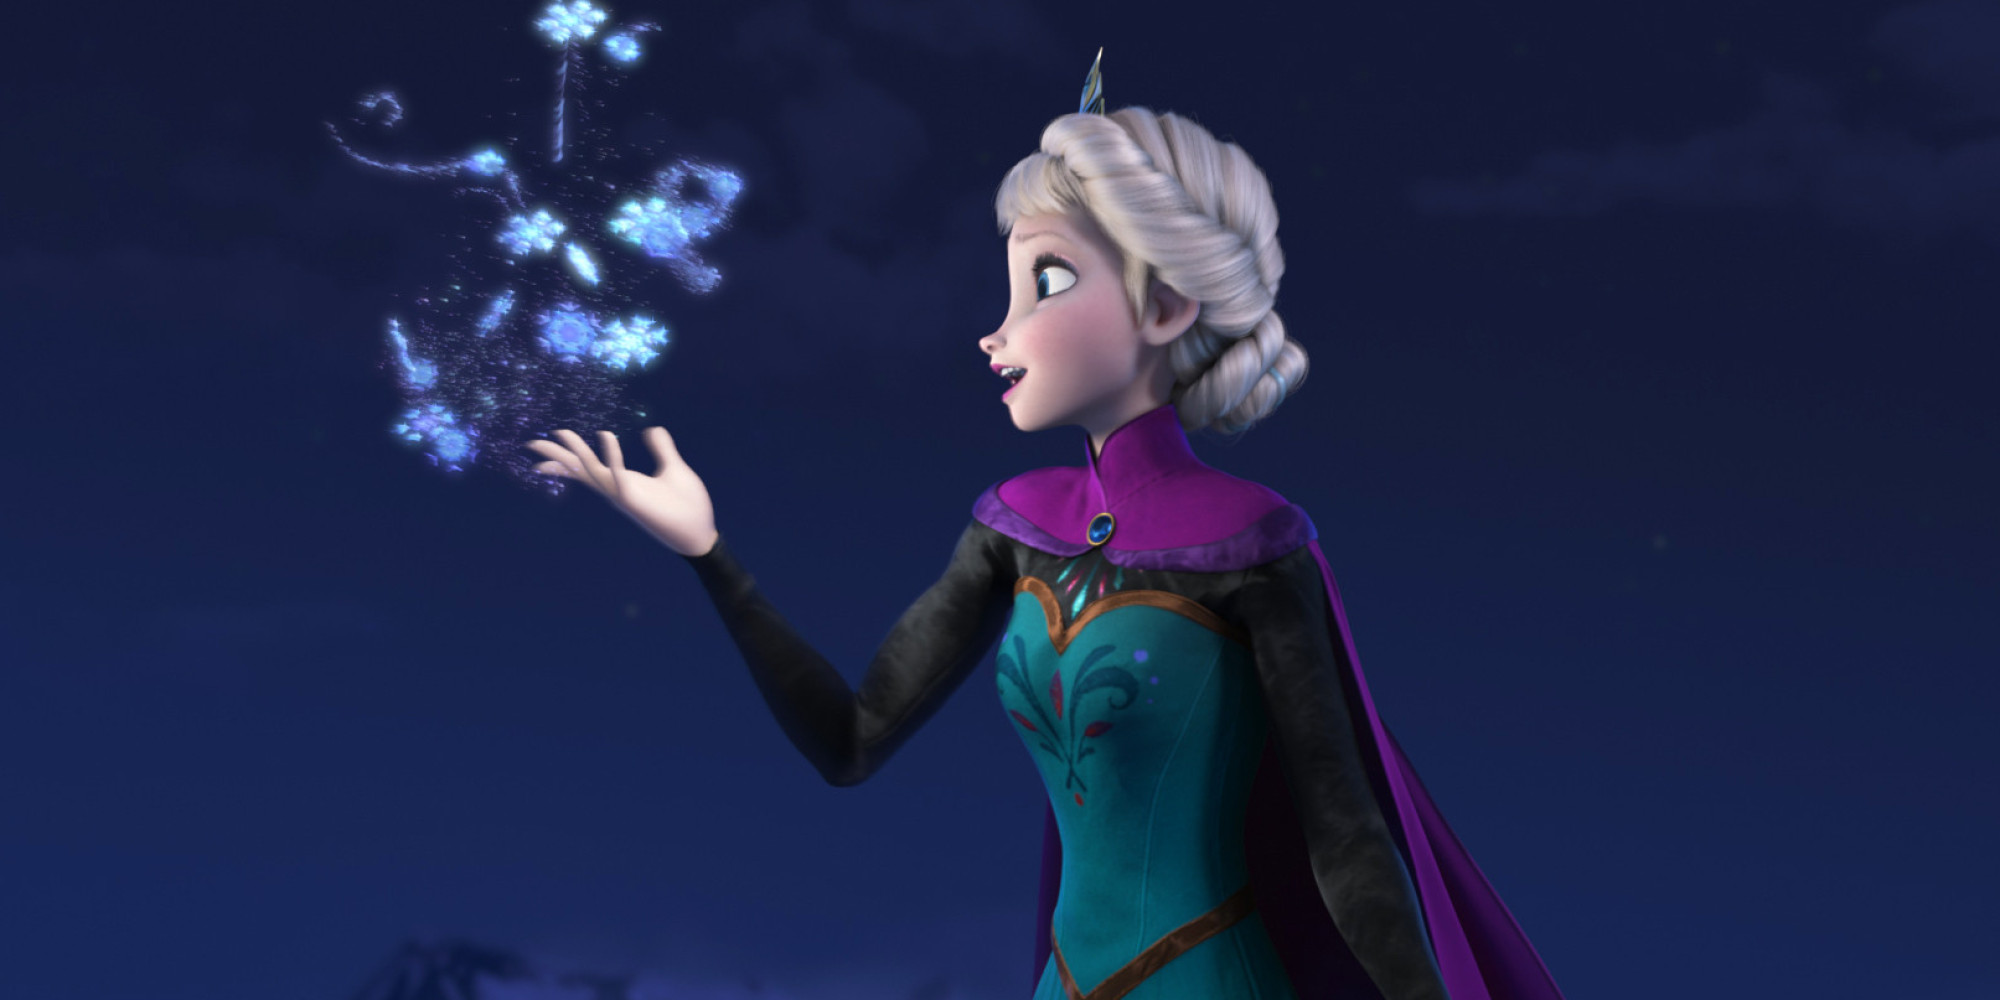 Tải ảnh đẹp công chúa Elsa kute